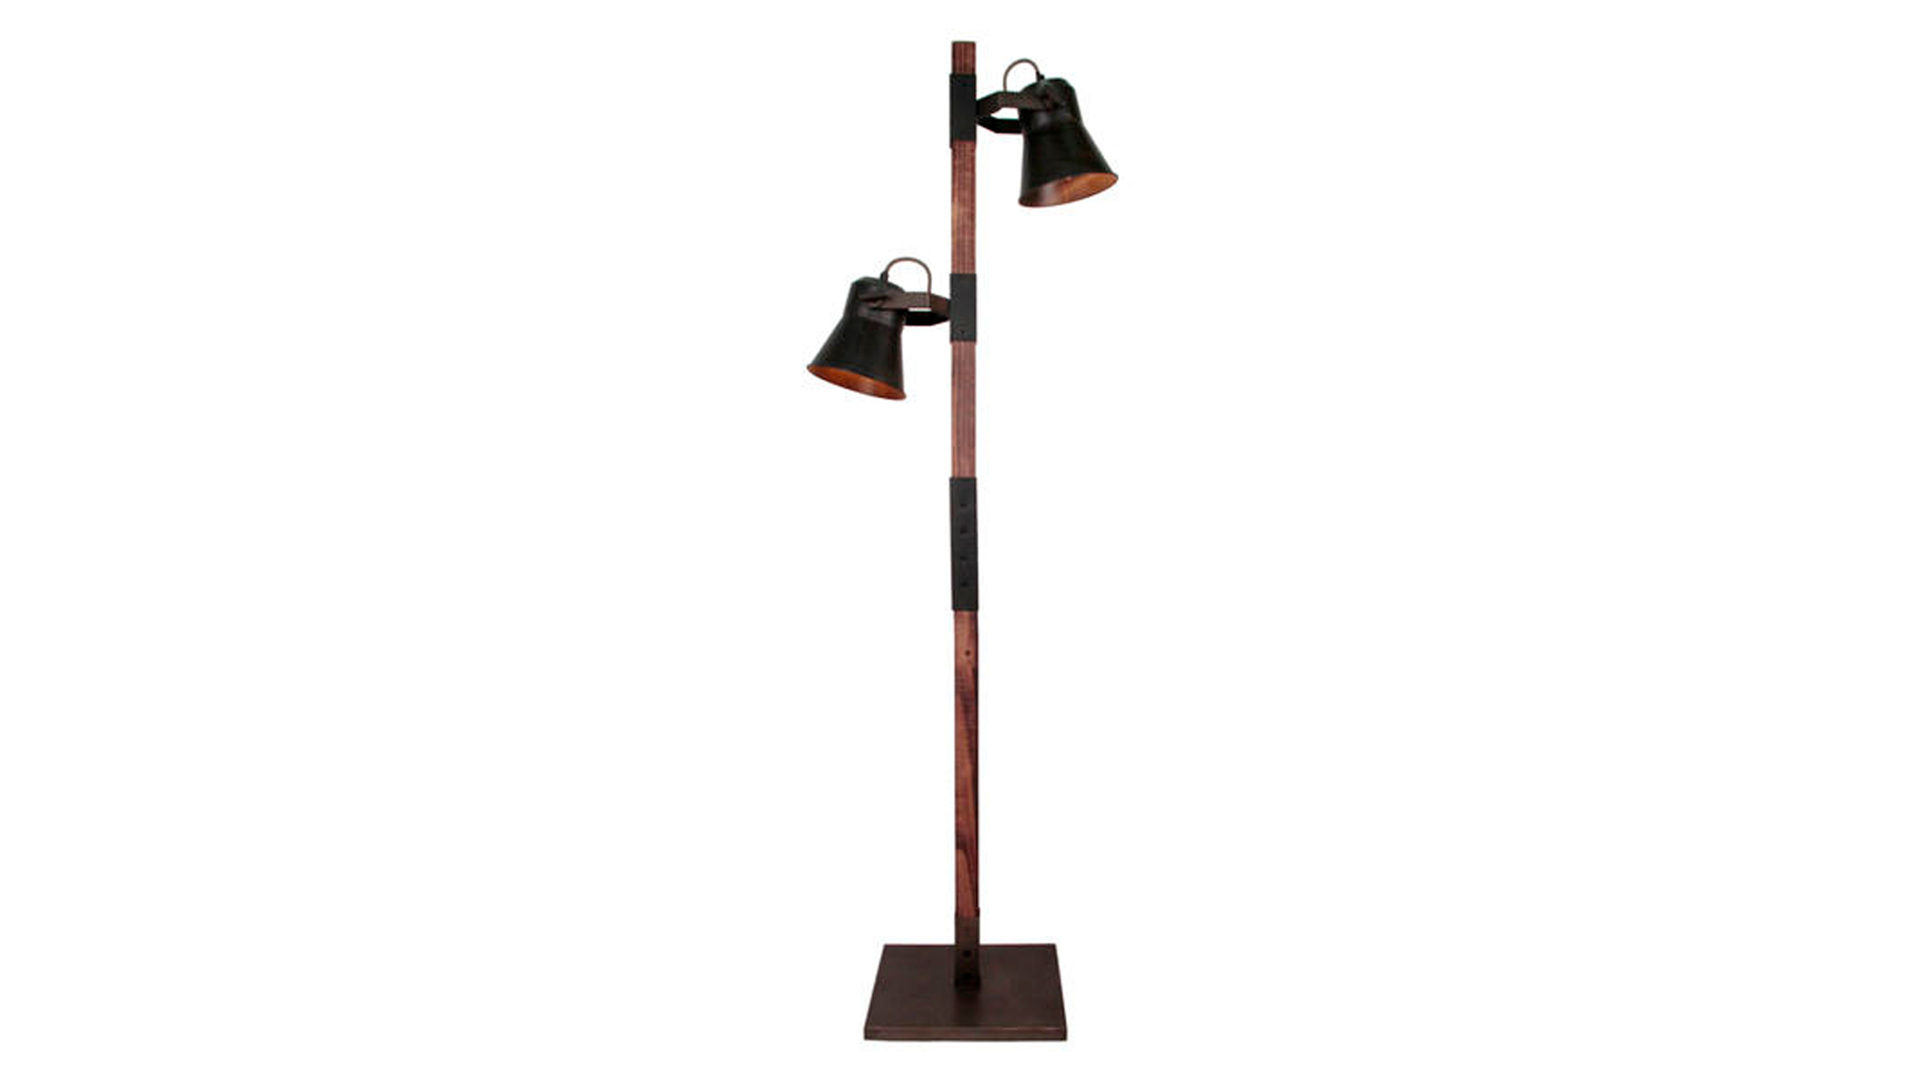 Brilliant Stehlampe Plow, schwarzer Stahl Lamstedt, Höhe 154 Cuxhaven, Bremerhaven cm, & Holz – ca